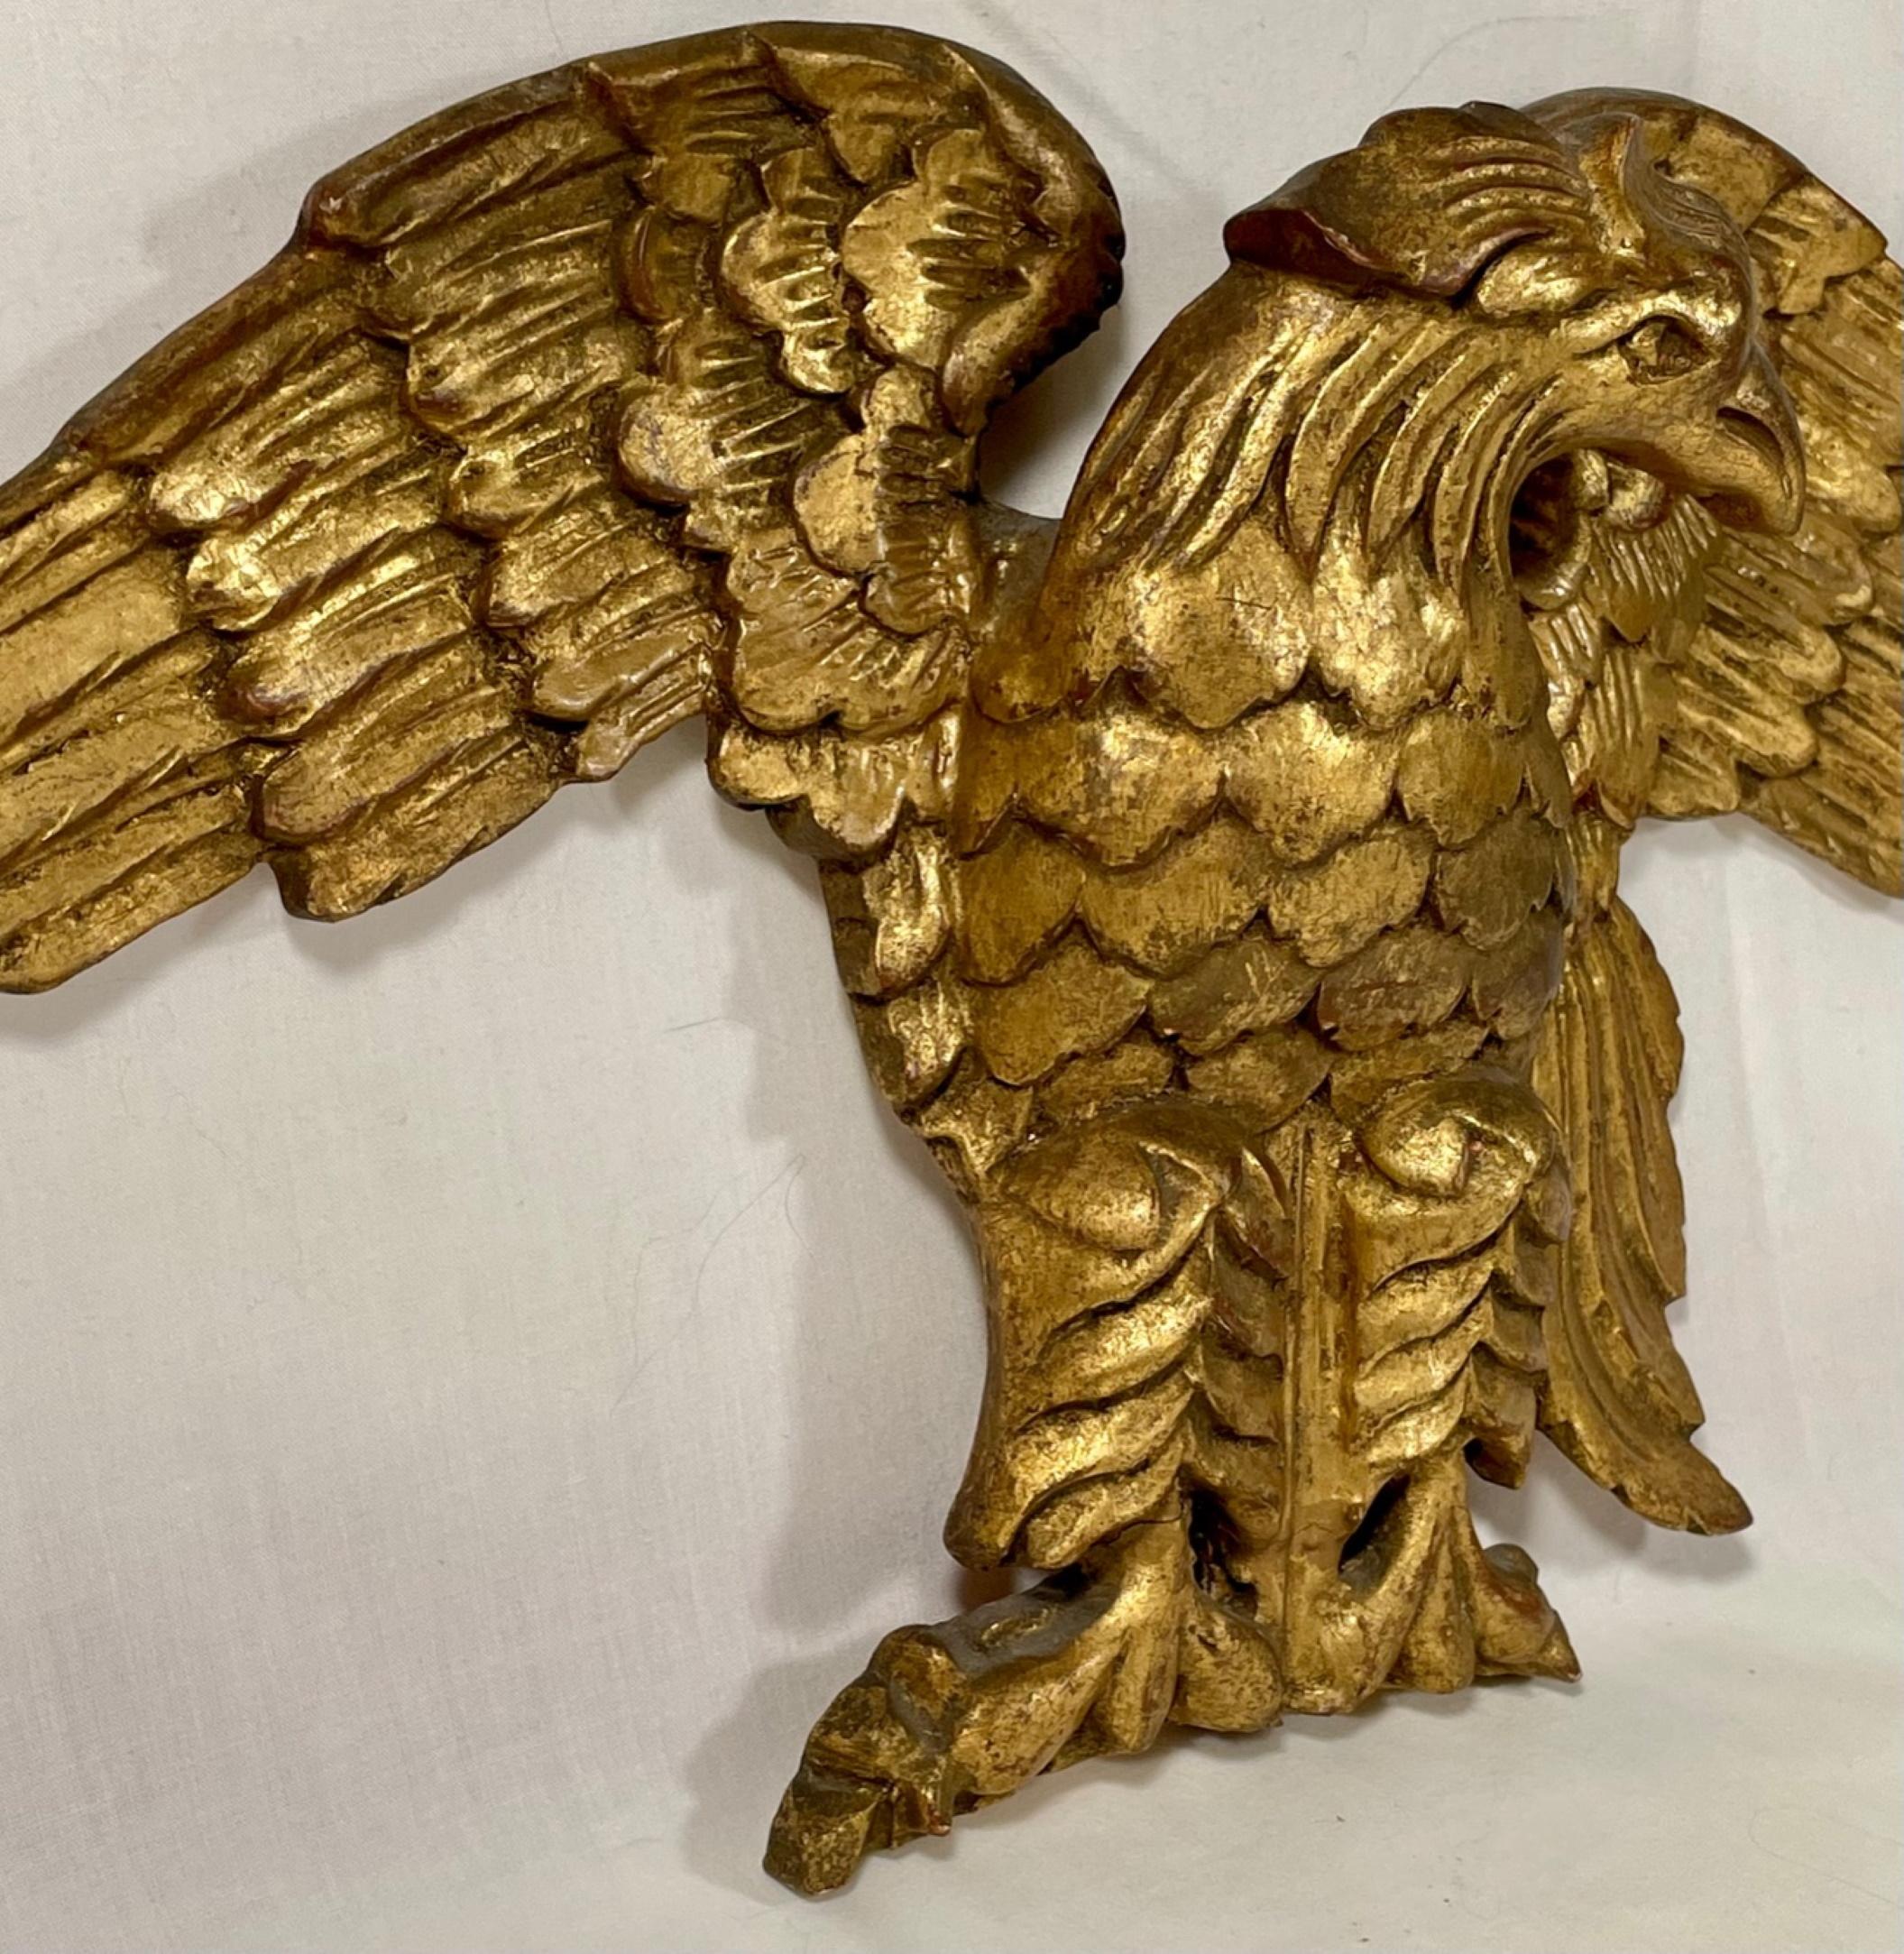 aigle américain à fronton doré, sculpté à la main, du 19e siècle.

Aigle décoratif ancien à fronton en bois sculpté et doré à la main. La sculpture expressive avec la tête tournée vers la gauche et les ailes déployées est exécutée de façon